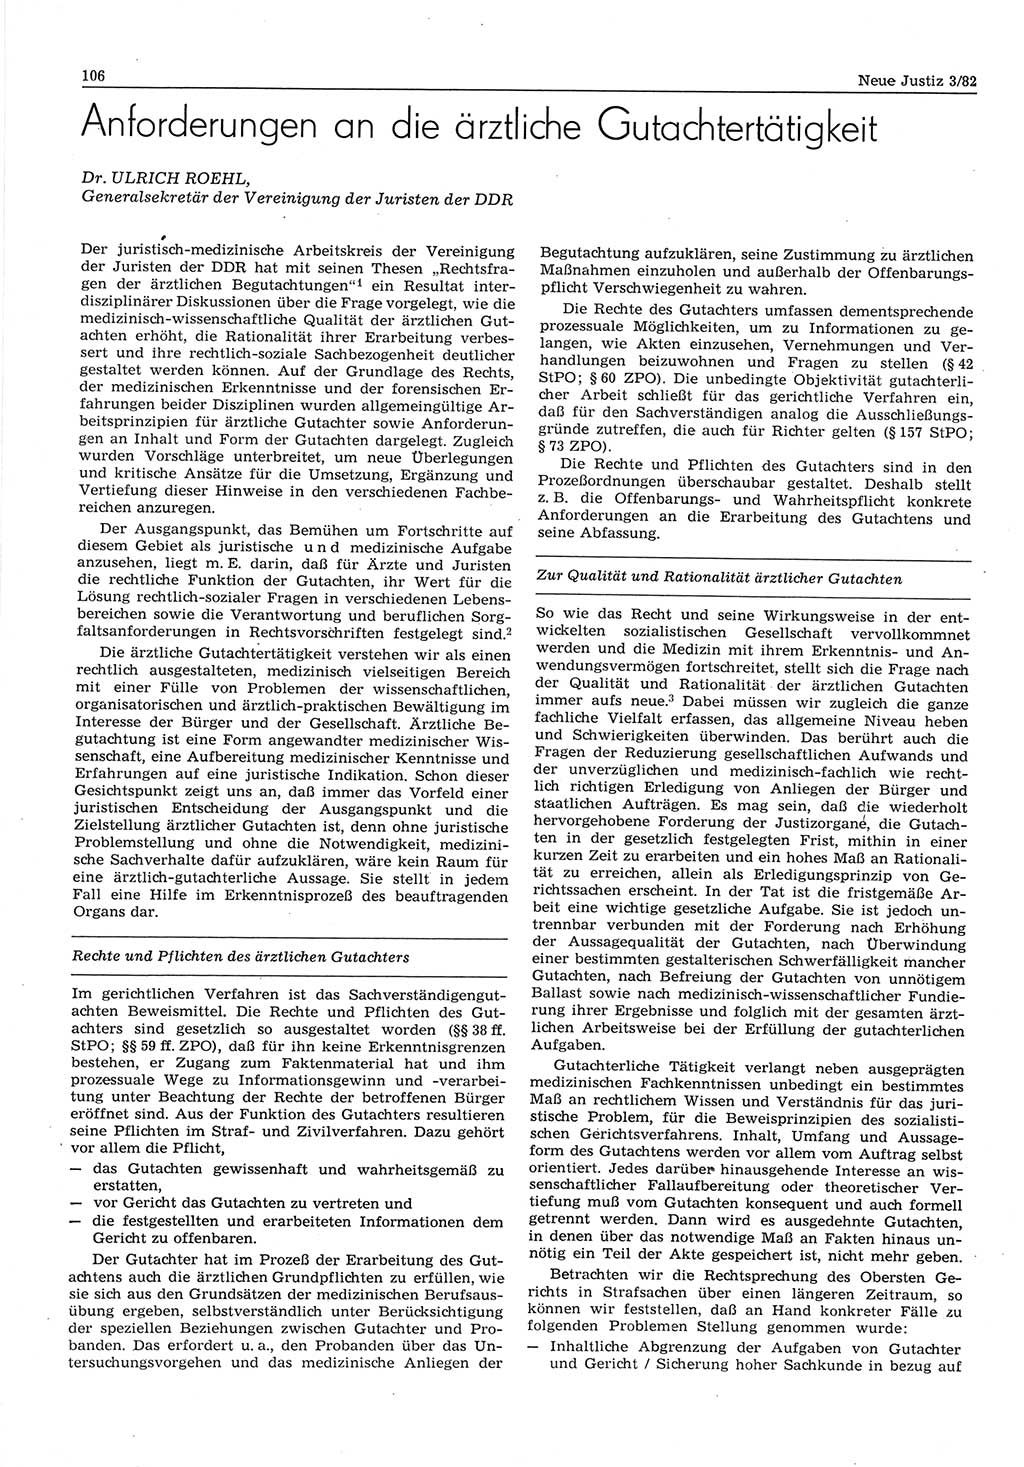 Neue Justiz (NJ), Zeitschrift für sozialistisches Recht und Gesetzlichkeit [Deutsche Demokratische Republik (DDR)], 36. Jahrgang 1982, Seite 106 (NJ DDR 1982, S. 106)